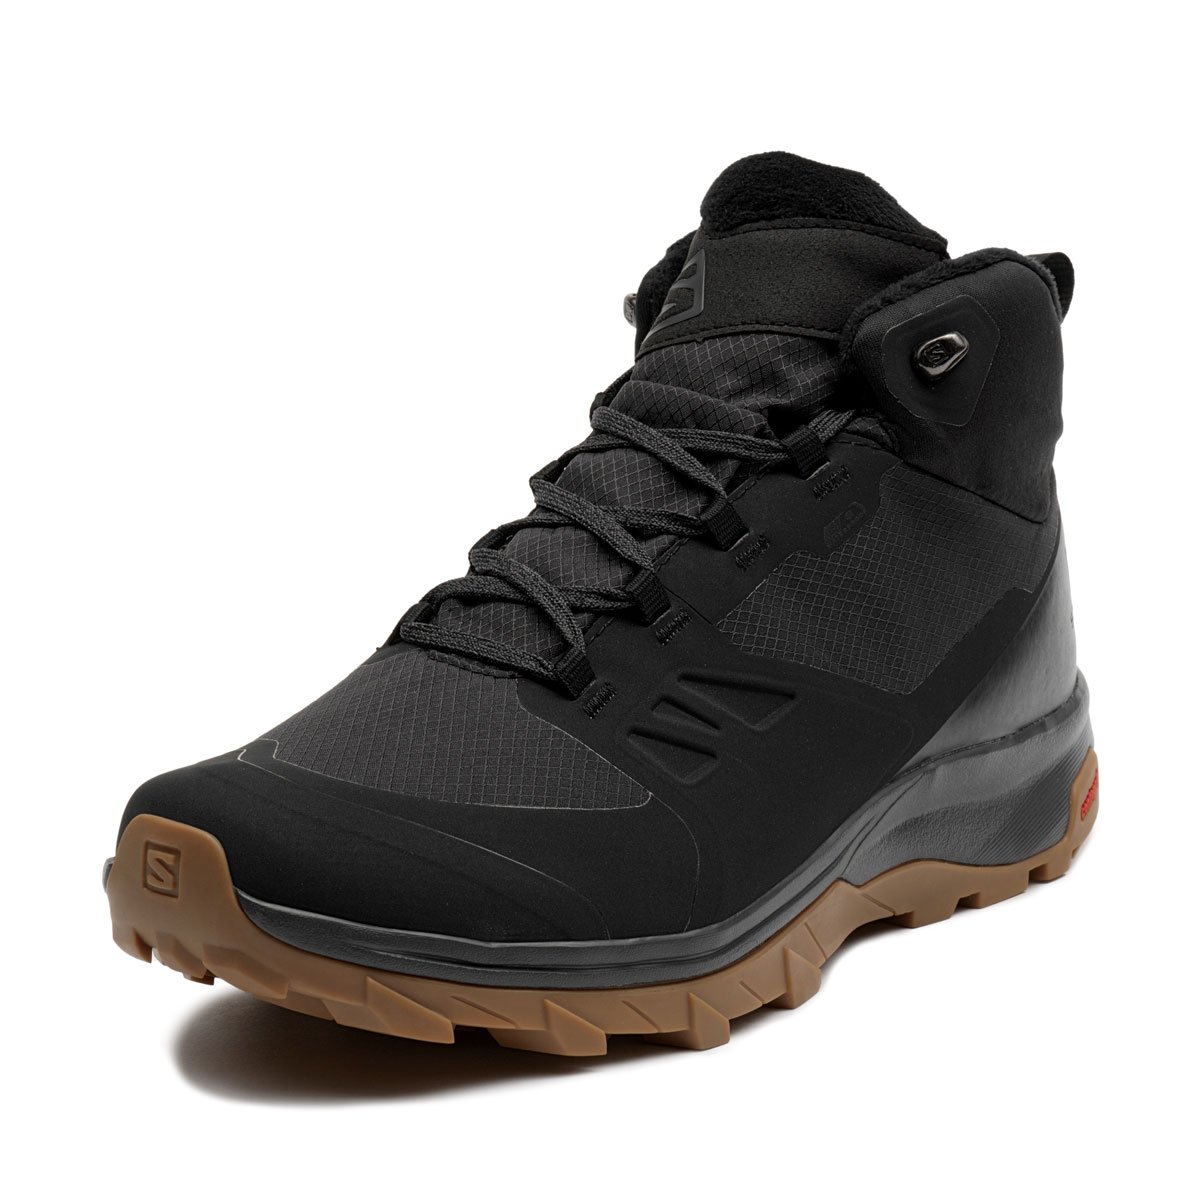 Salomon OutSnap CS WaterProof Мъжки спортни обувки 409220